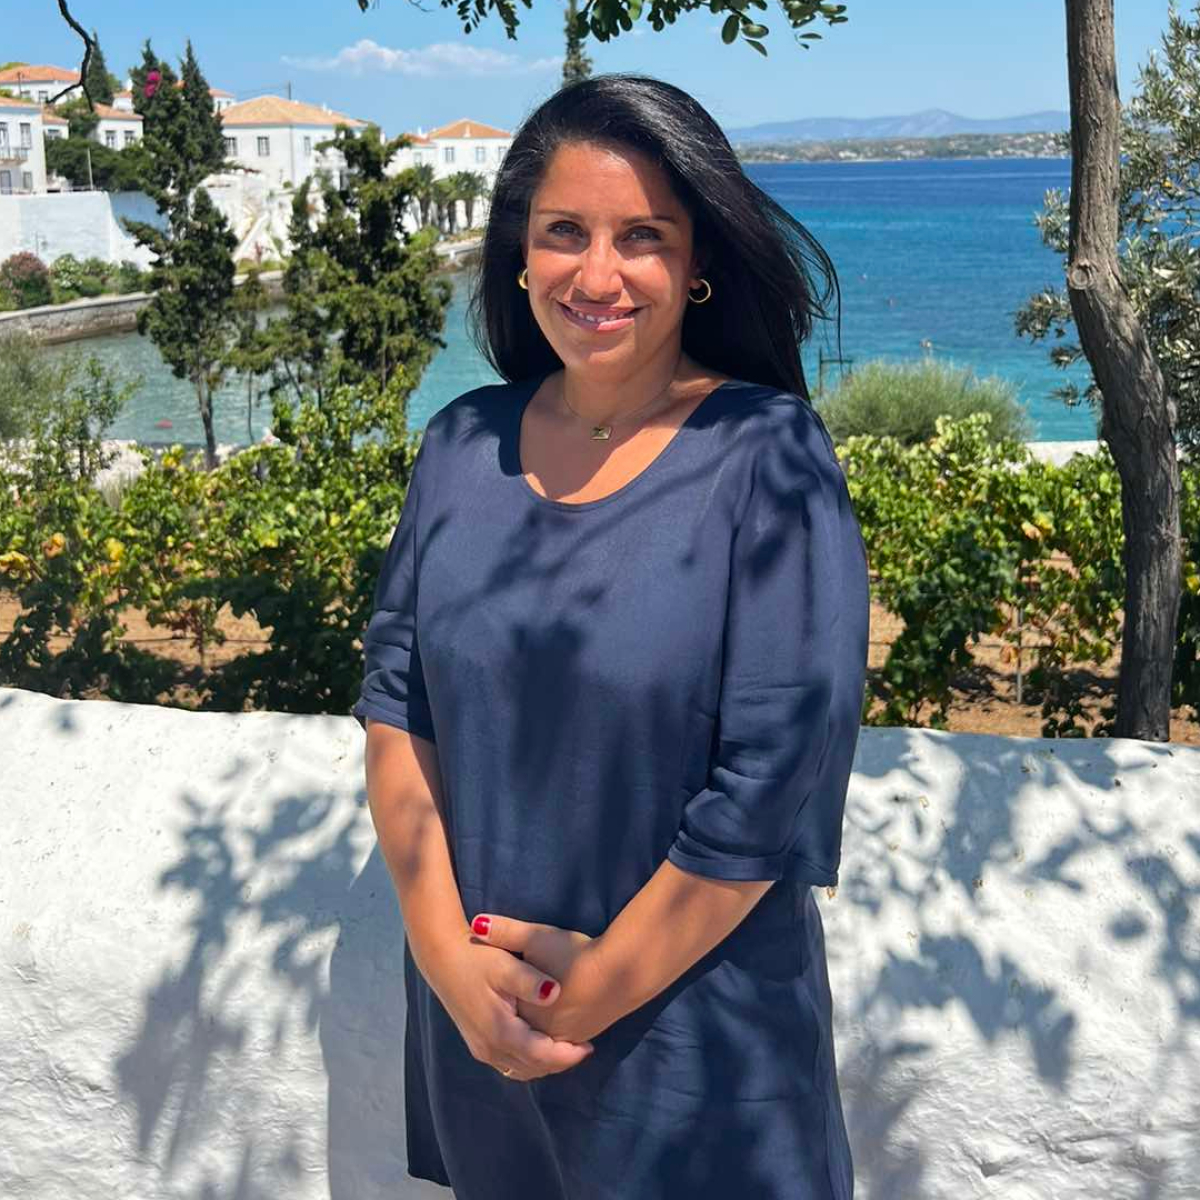 Ευγενία Φραγγιά: Η πρώτη γυναίκα Δήμαρχος Σπετσών μετά την Μπουμπουλίνα, μιλά στο JennyGr | Jenny.gr